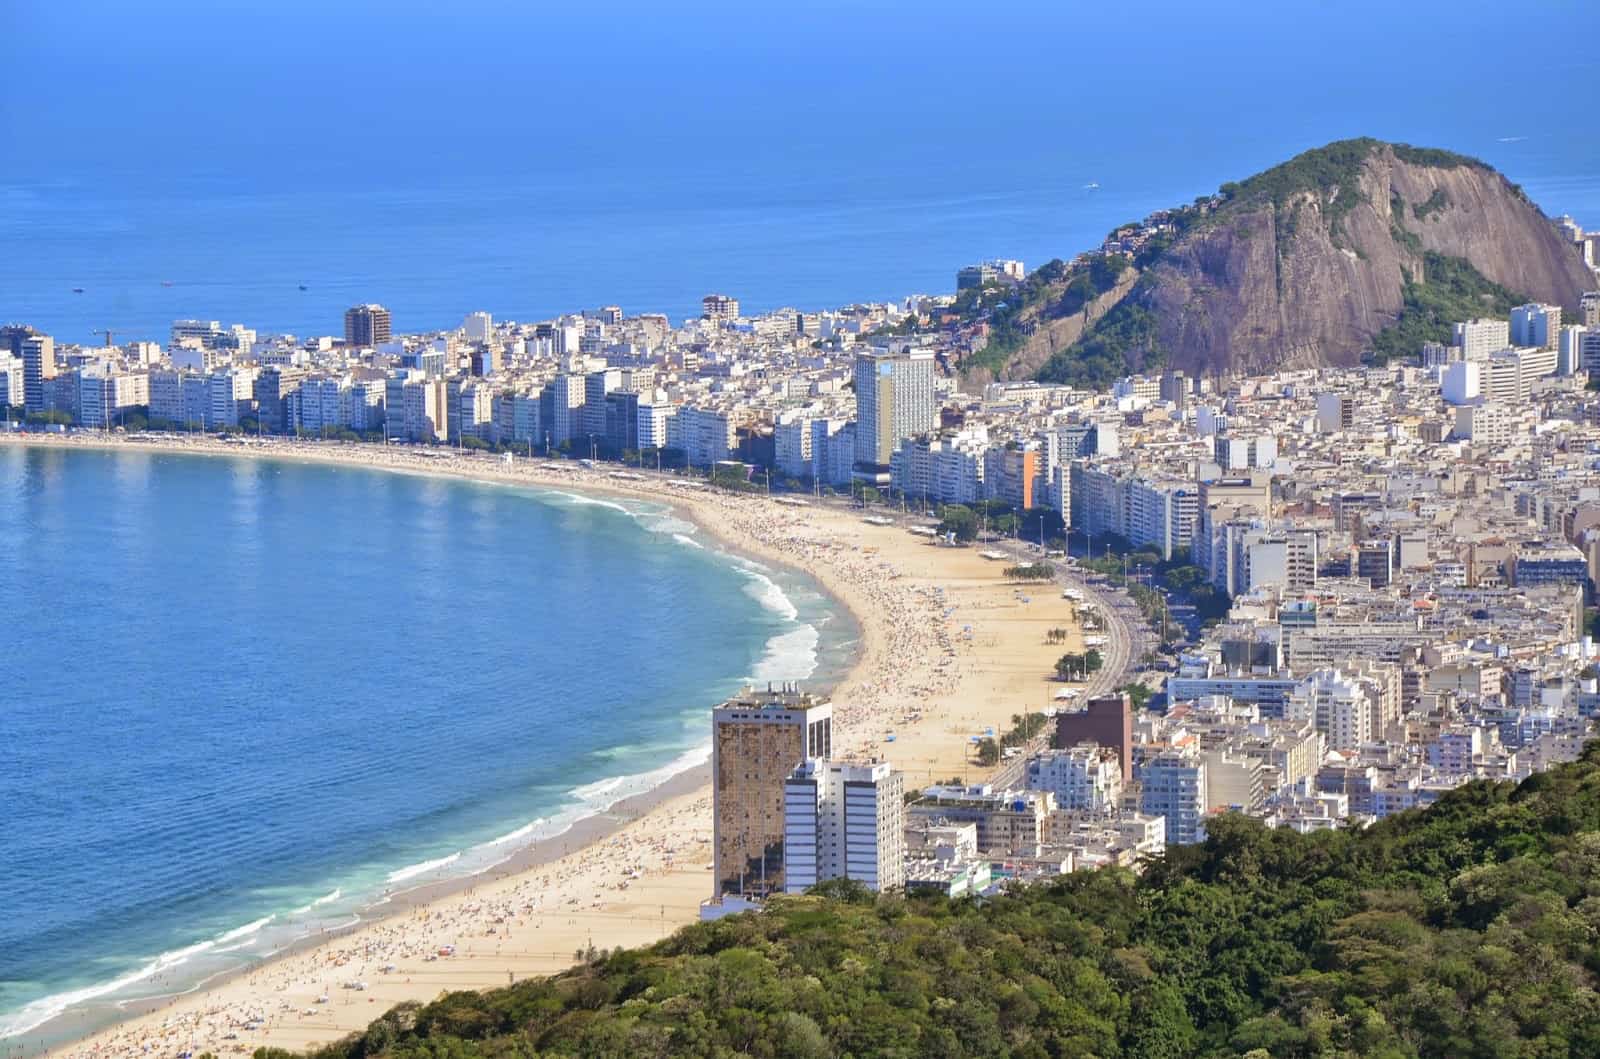 Copacabana from Sugarloaf Mountain in Rio de Janeiro, Brazil